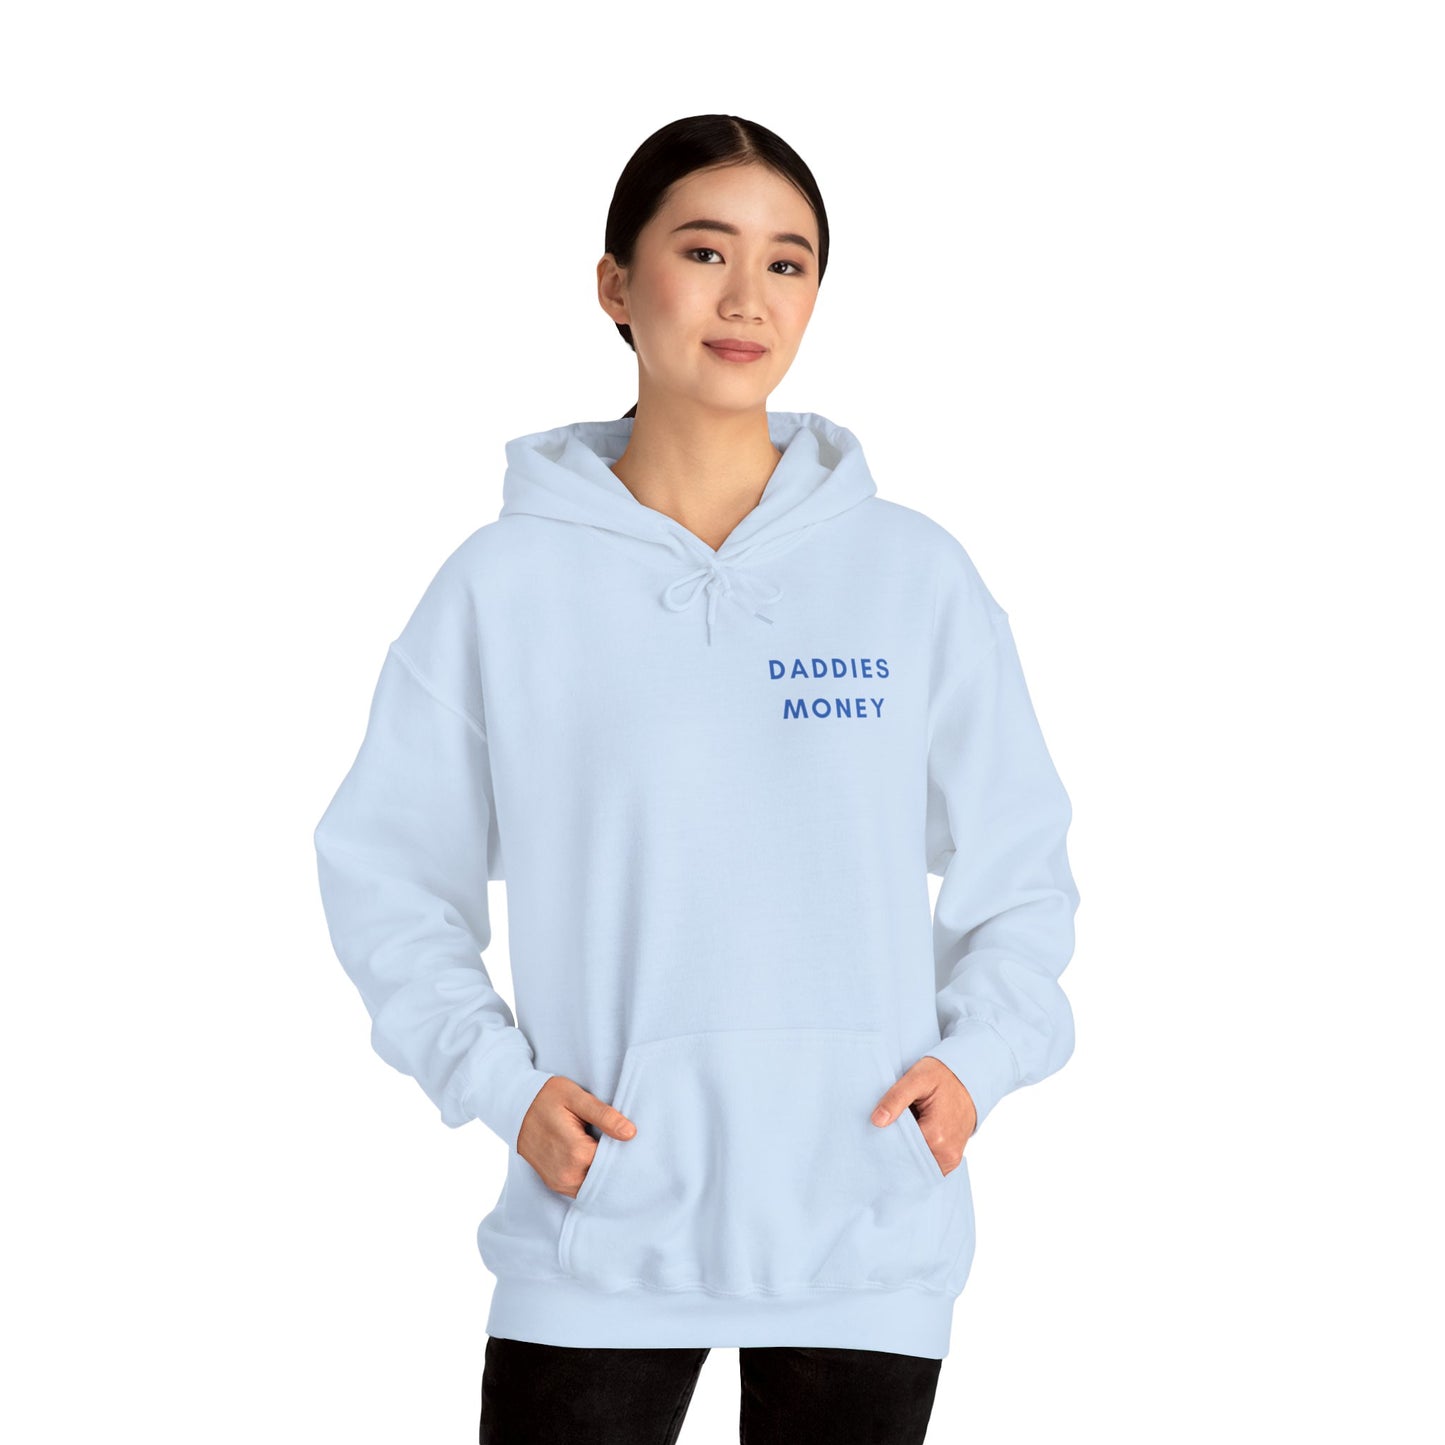 Daddies money Unisex Heavy Blend™ Hooded Sweatshirt